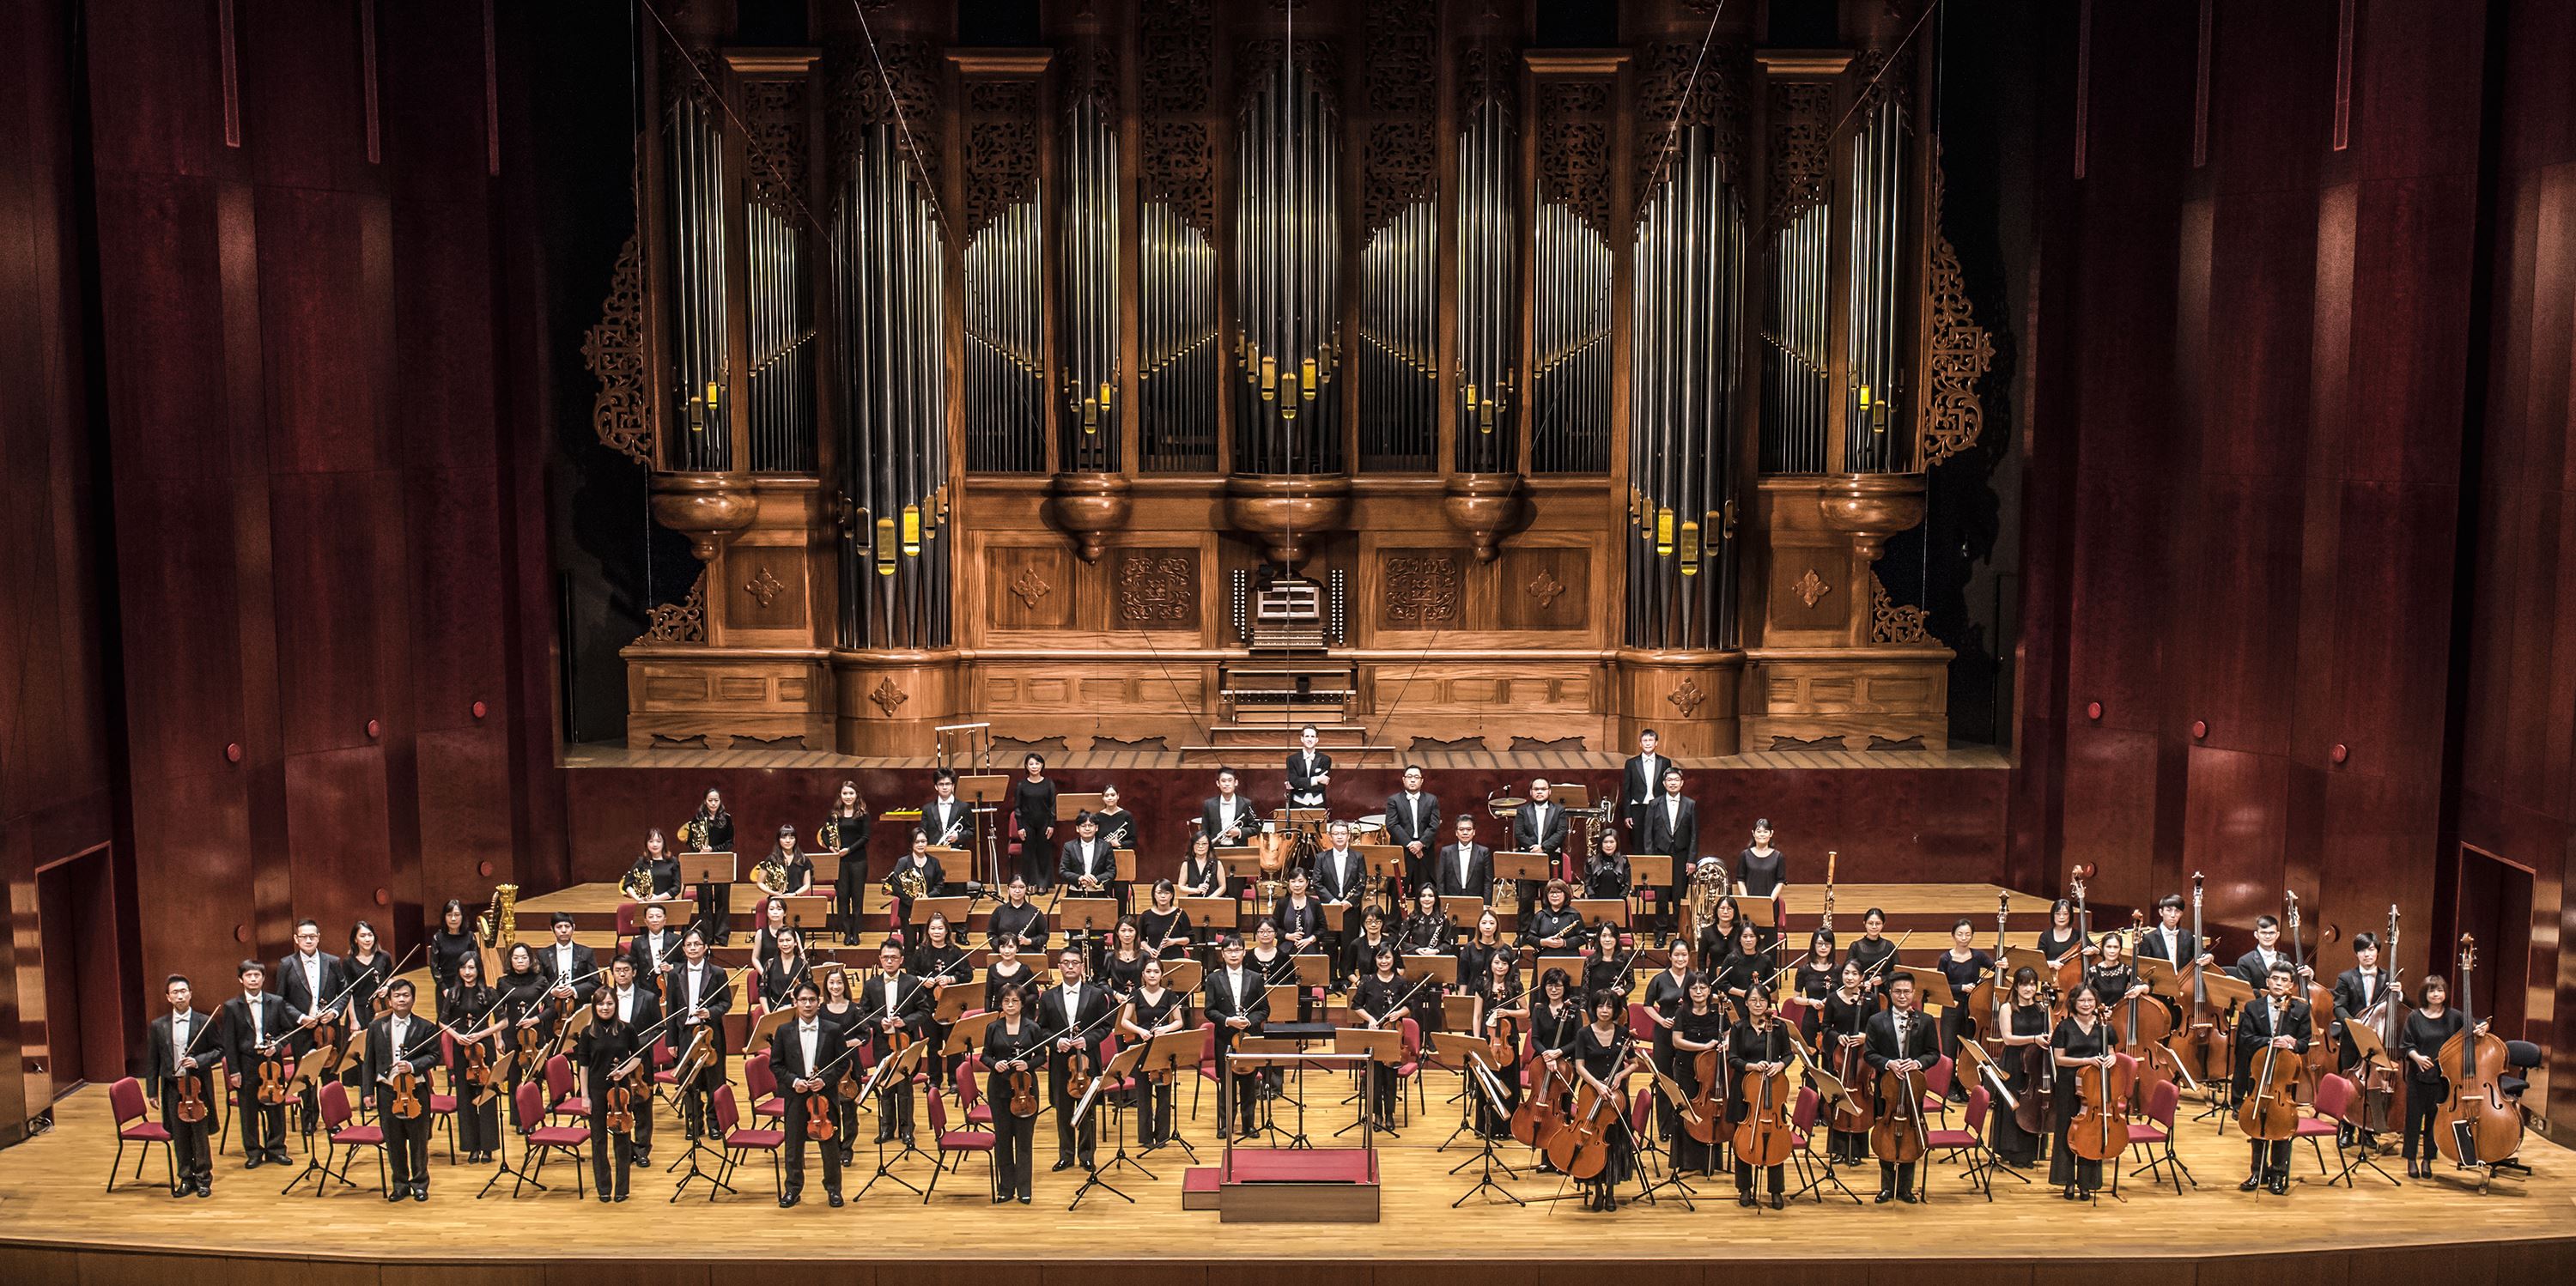 國立臺灣交響樂團 National Taiwan Symphony Orchestra.jpg